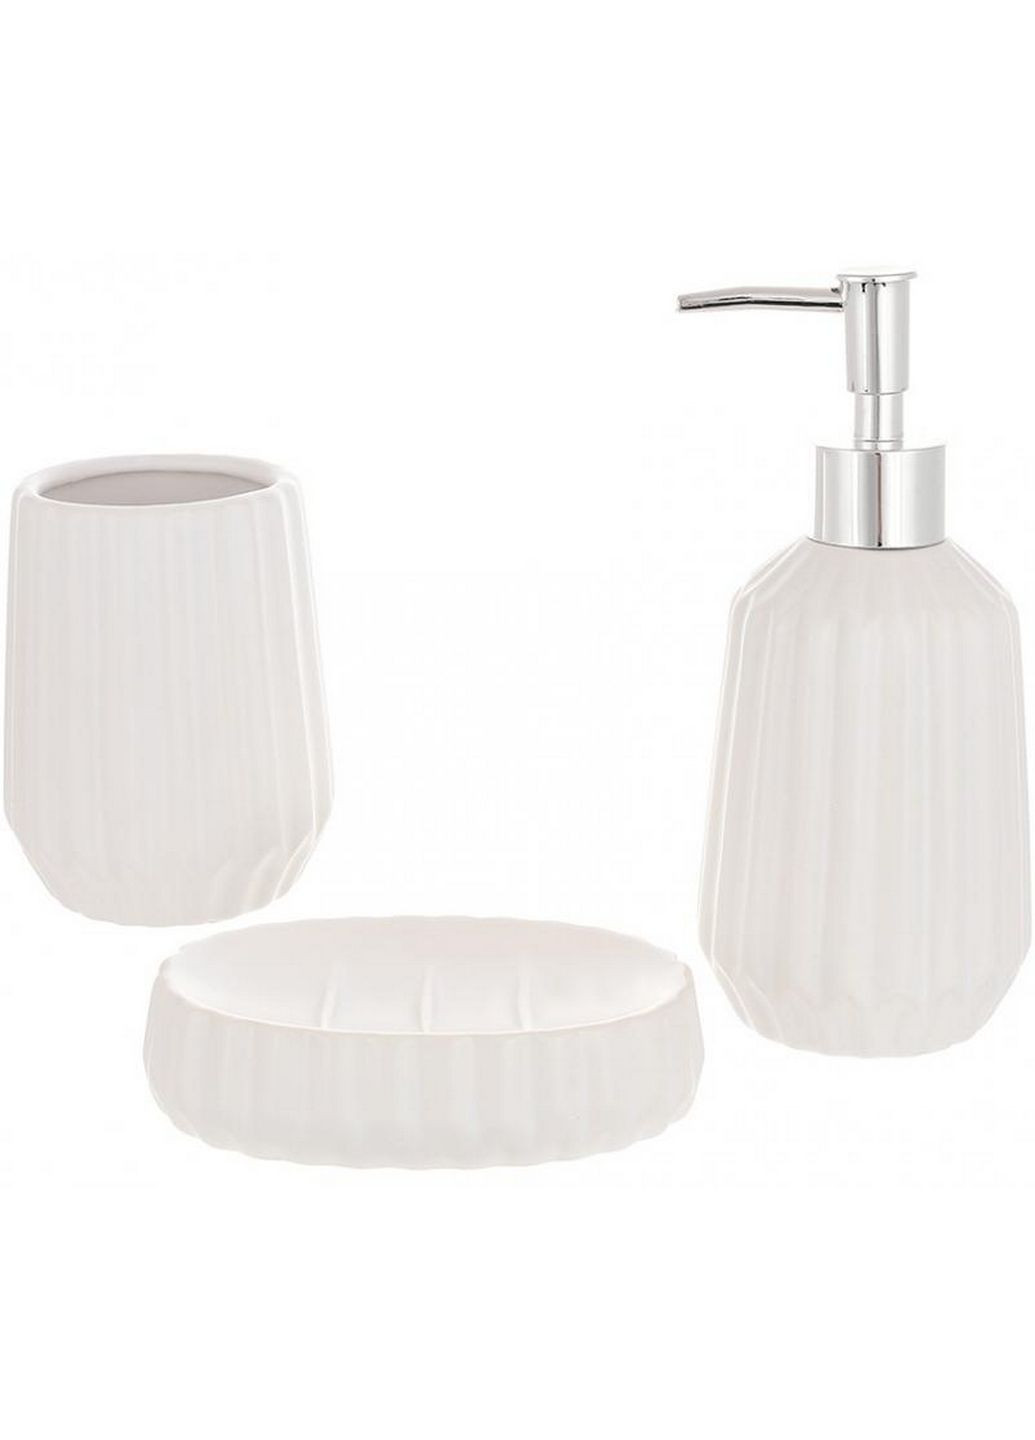 Набор аксессуаров bright для ванной комнаты "молочный белый" 3 предмета, керамика BonaDi (282589075)